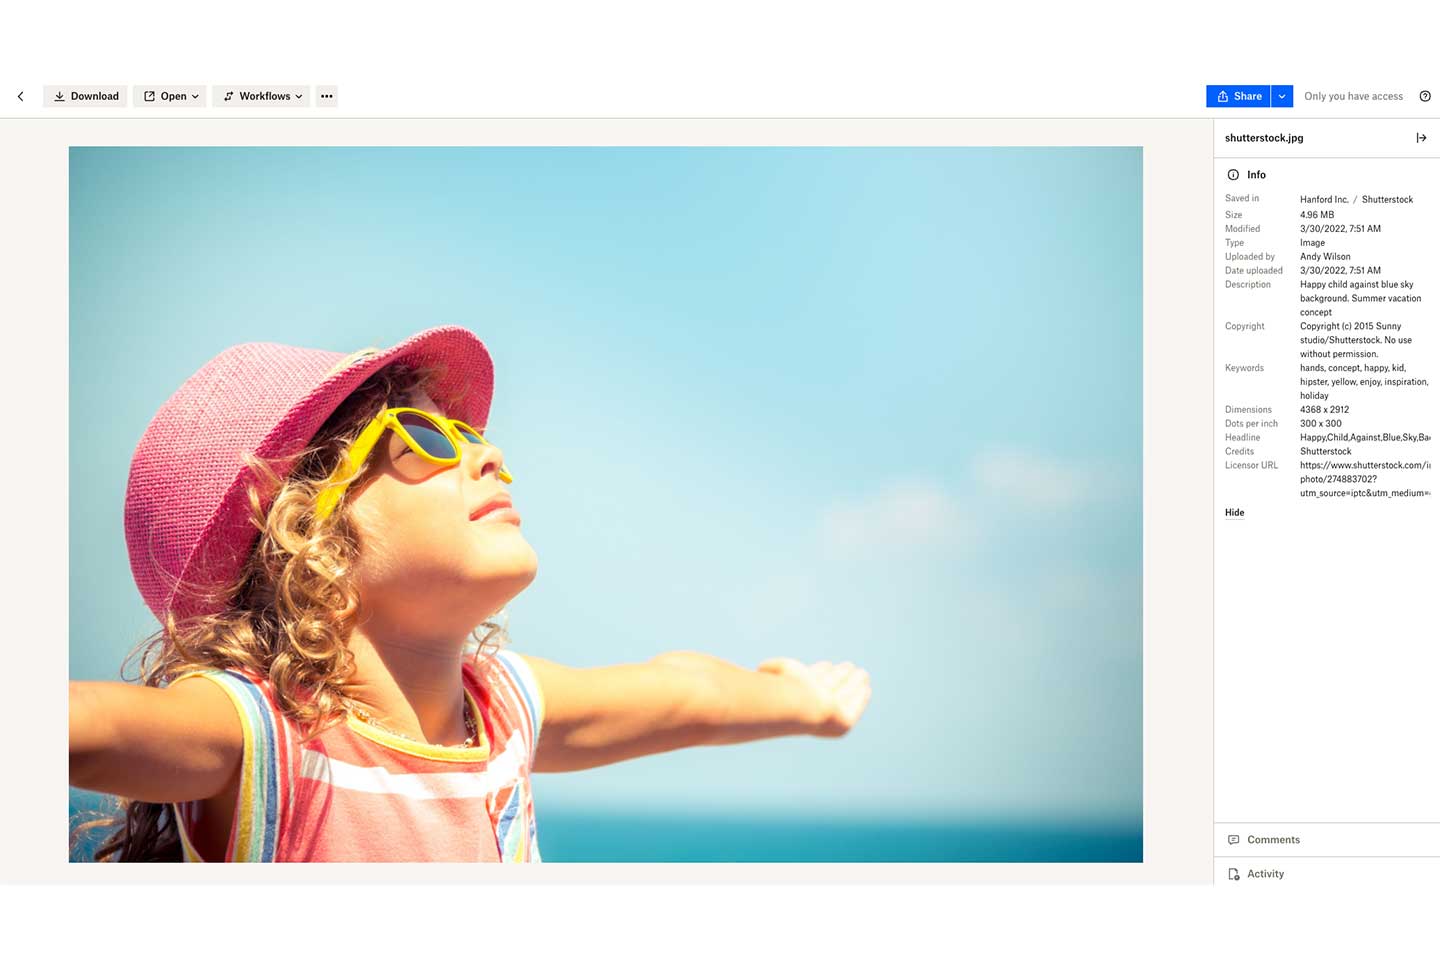 Aperçu Dropbox de la photo d'une fillette à la plage, avec les informations sur l'image dans la barre latérale droite